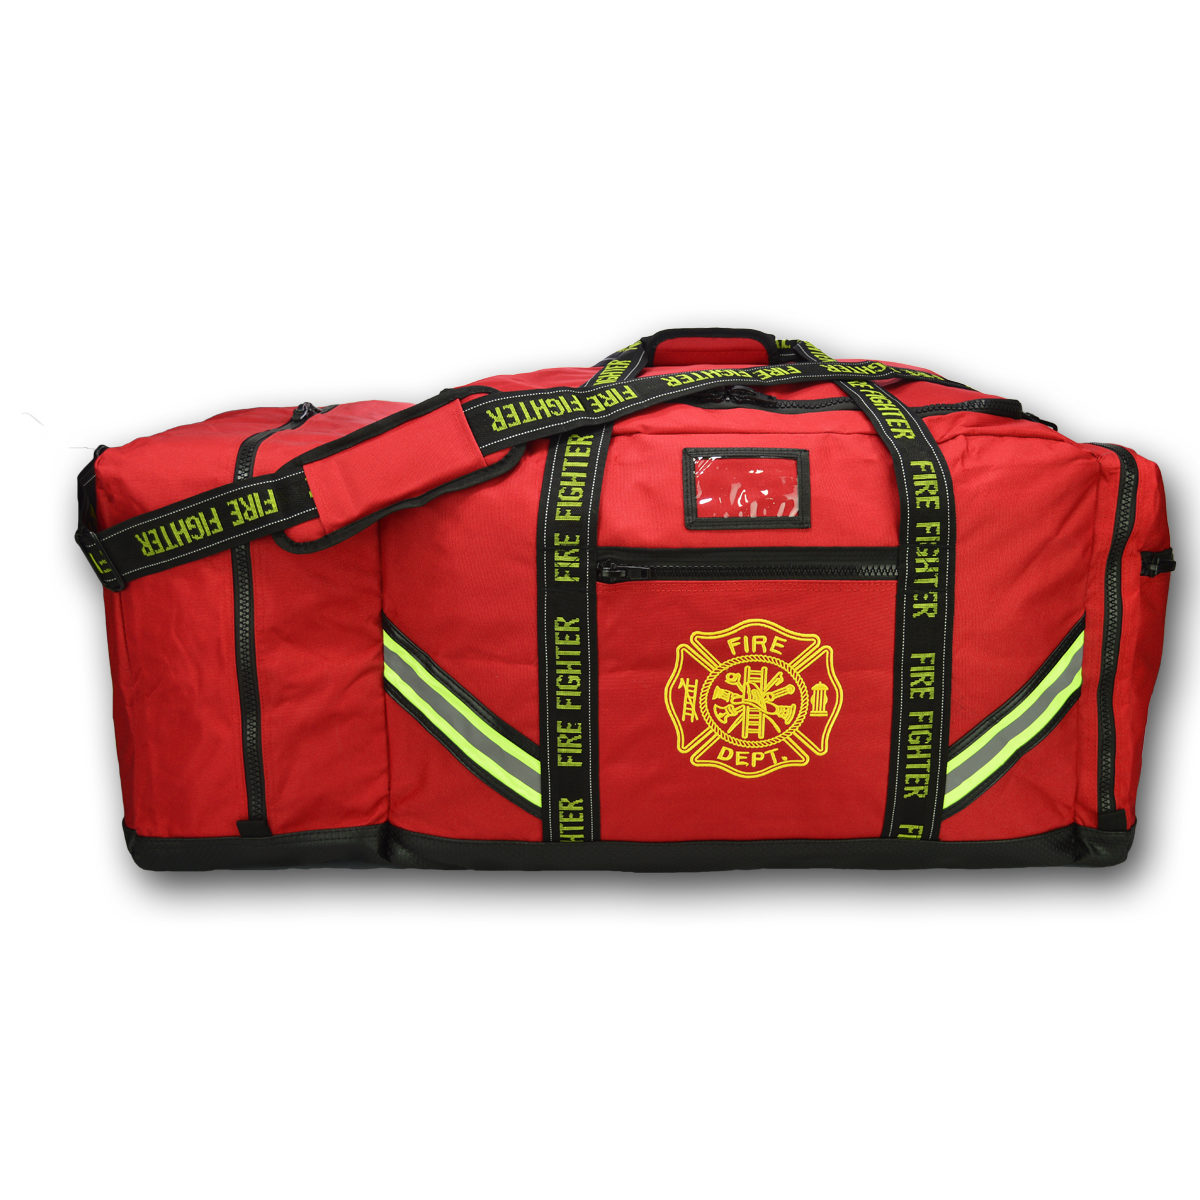 Details about   Firefighter Turnout Gear Carry Storage Bag Red Shoulder Strap   **Make Offer** 